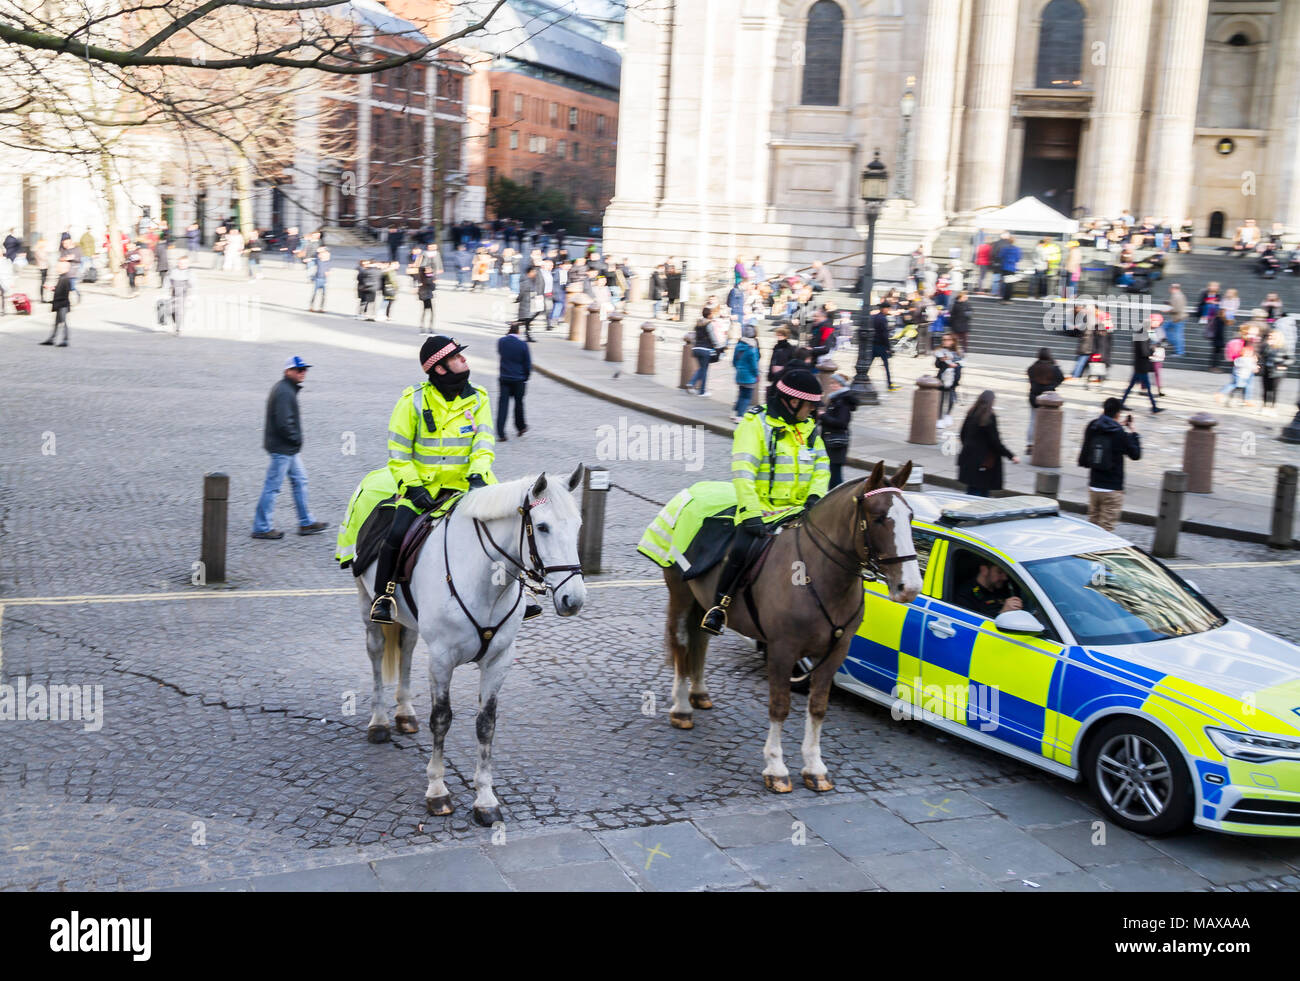 Englische Polizei, bobbys auf dem Pferd, London, England, uk Polizei Polizei Old Bill, Großbritannien britische Konzept Behörde peace keeping Stockfoto